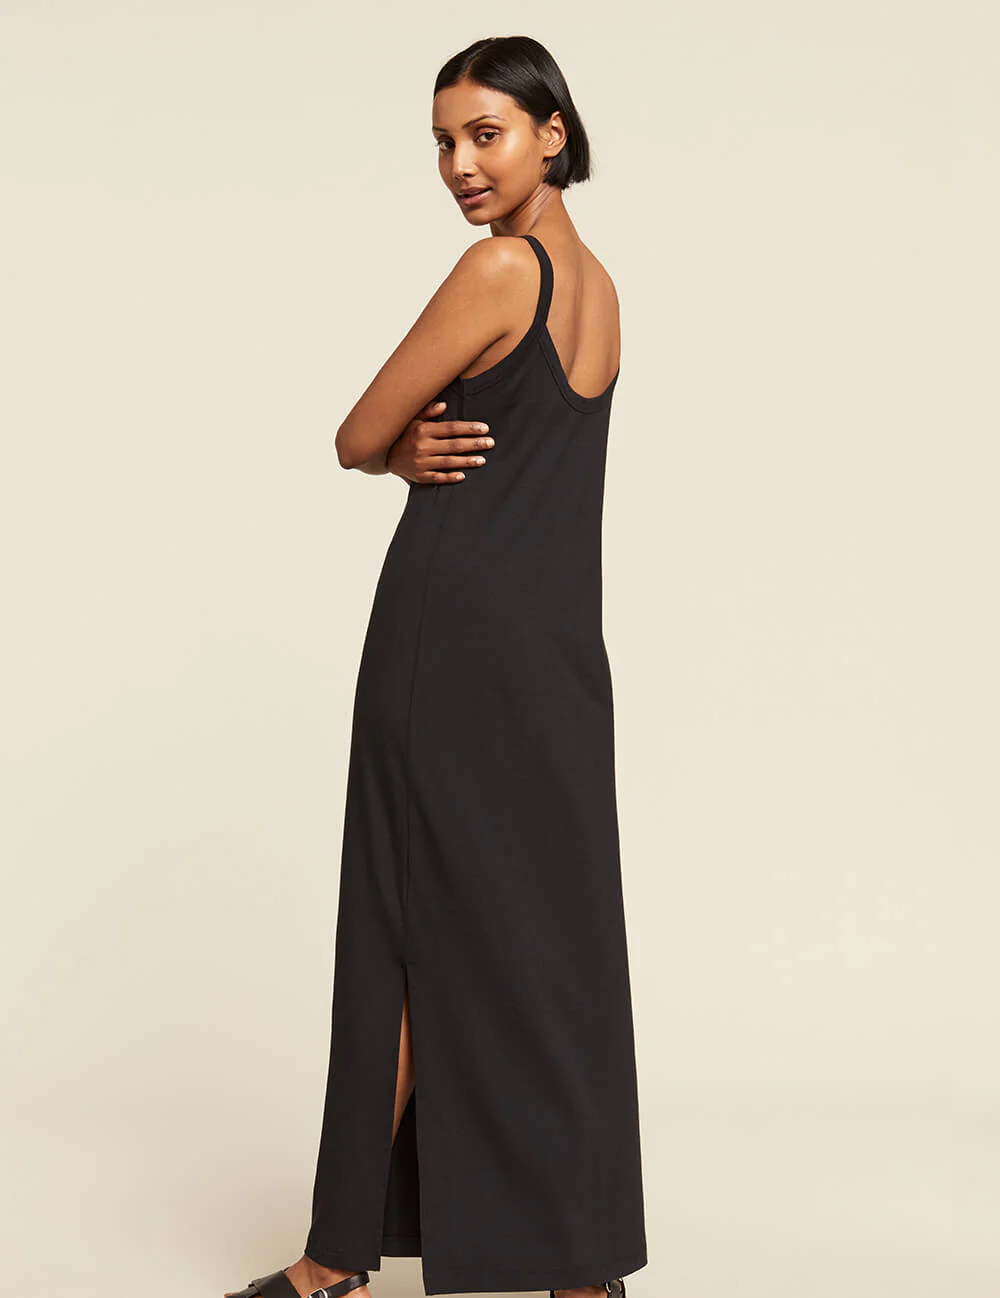 A model in a black floor length slip dress looks over her shoulder.